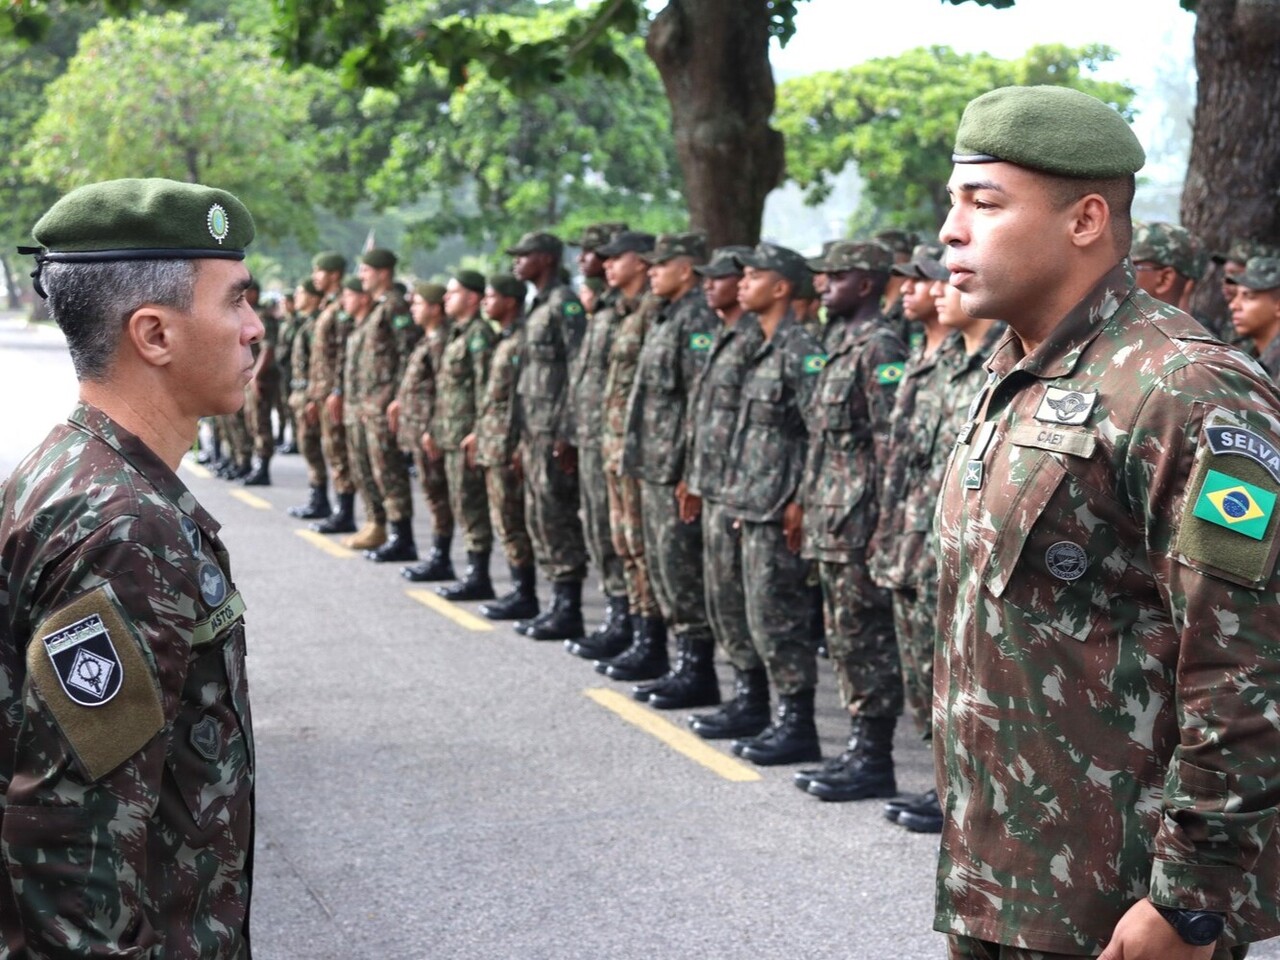 Centro de Avaliações comemora o Dia do Exército em formatura com entrega de medalhas